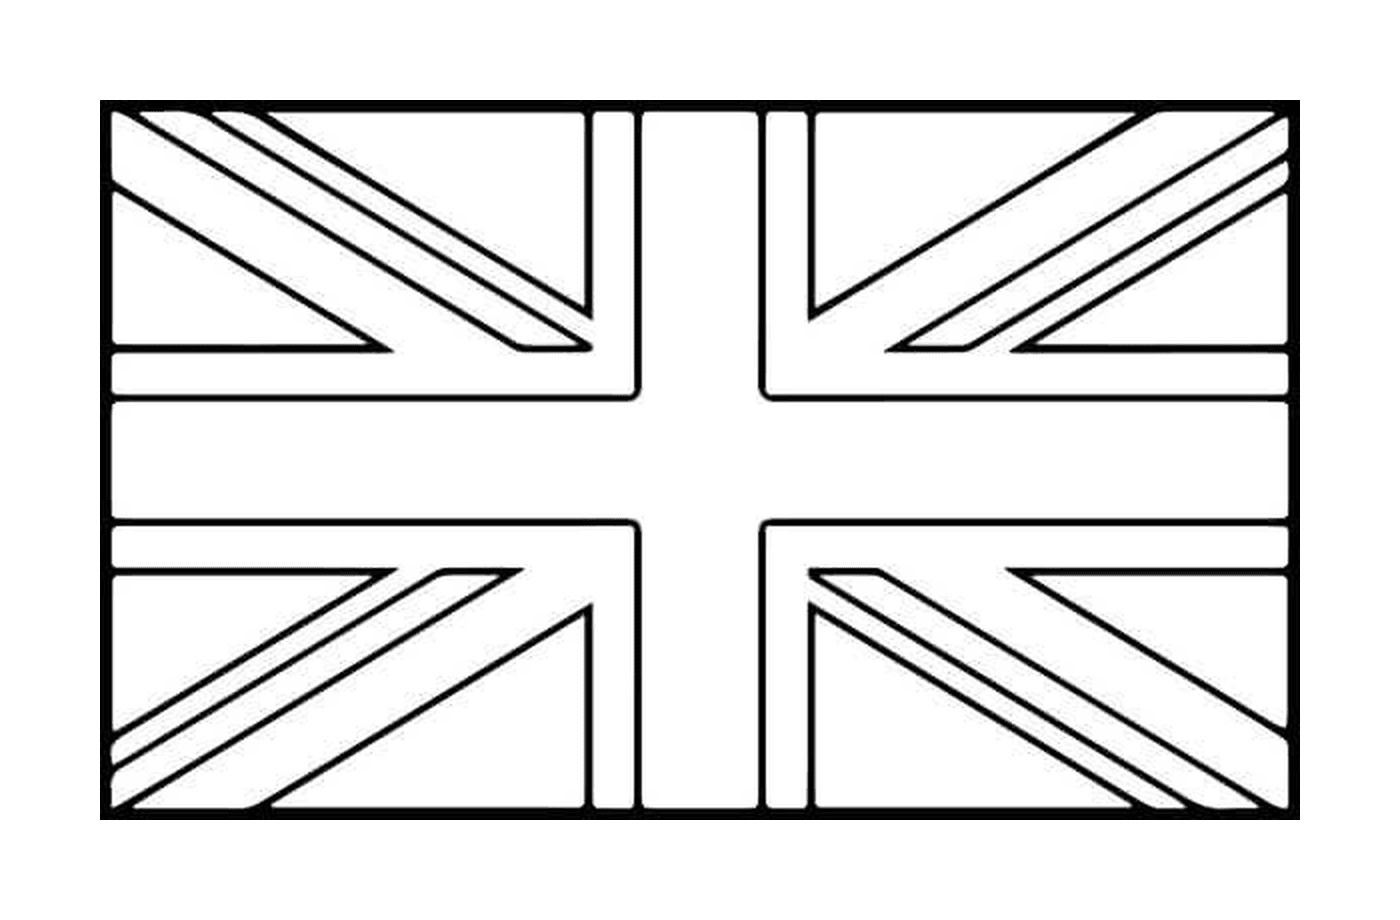  英国国旗 